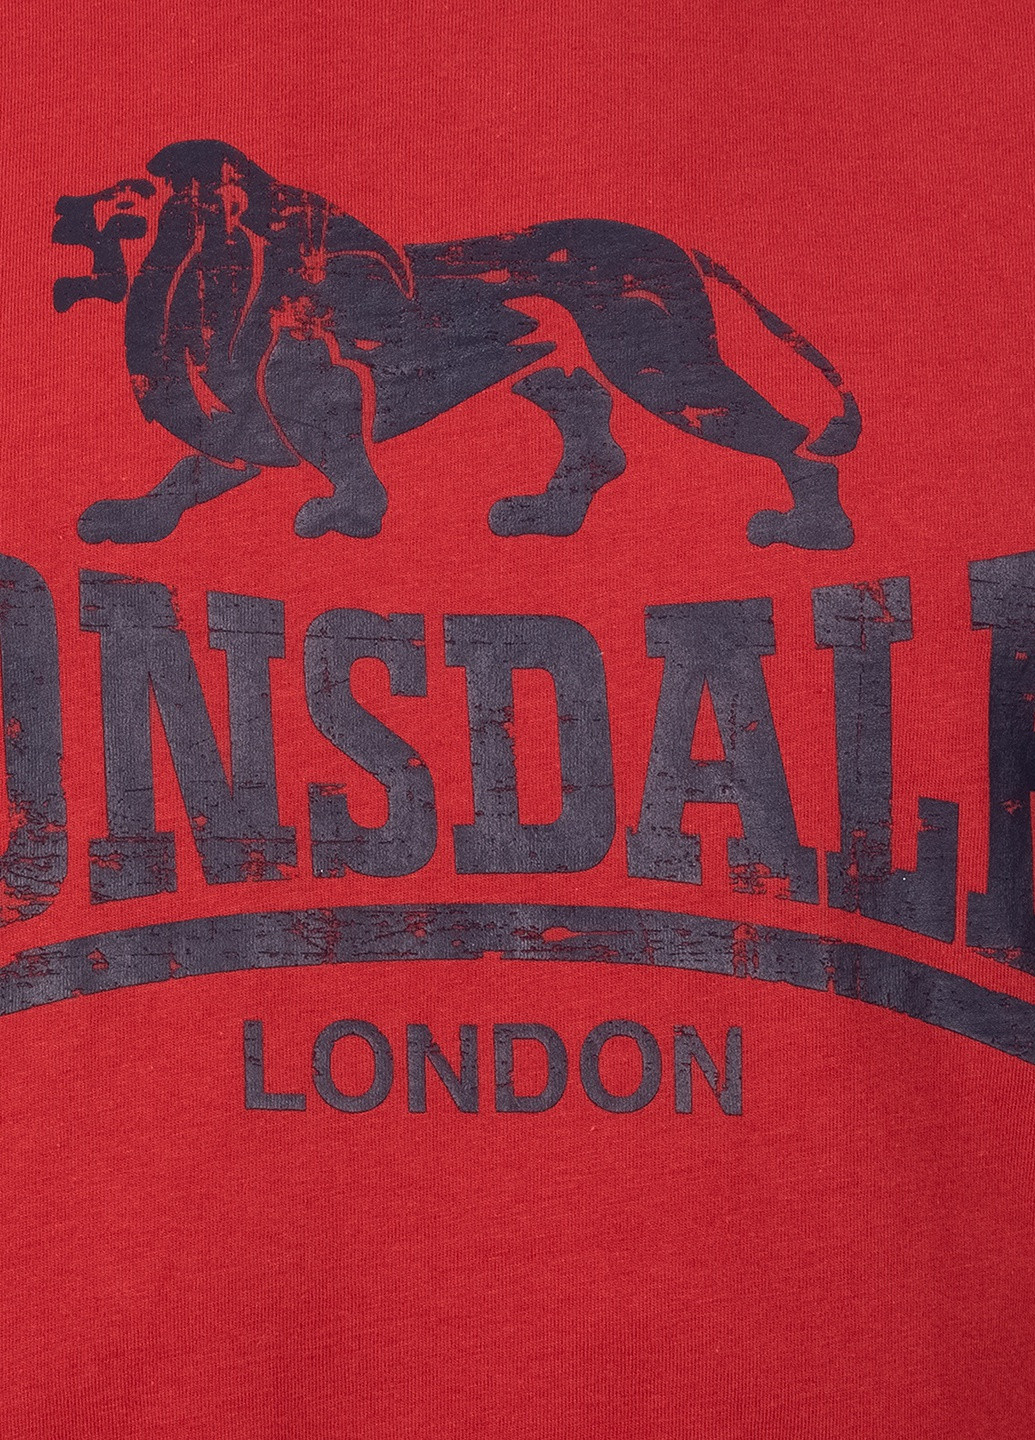 Темно-красная футболка Lonsdale SILVERHILL